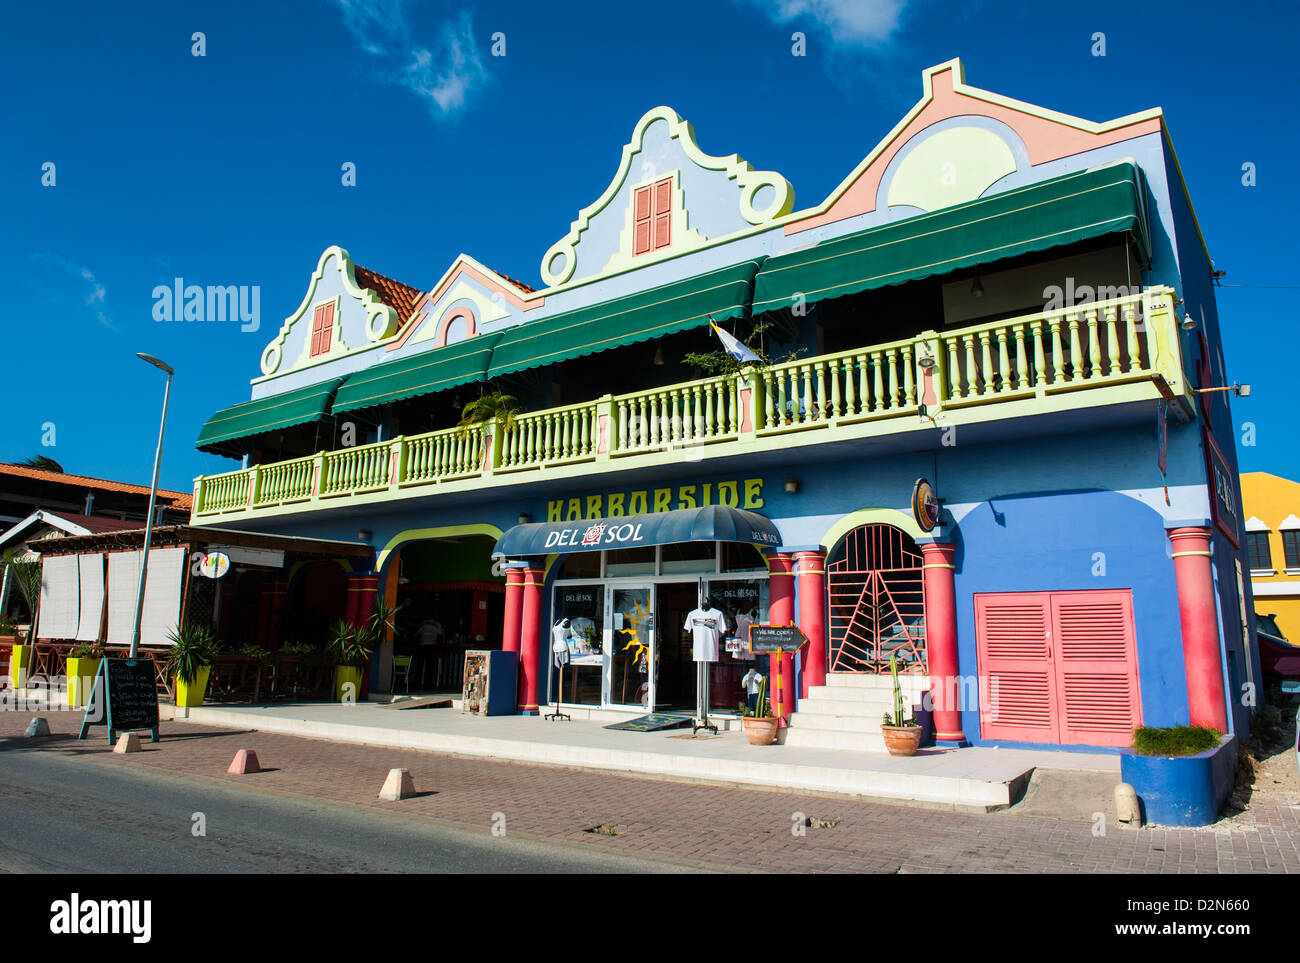 Capitale de Kralendijk Bonaire, Îles ABC, Netherlands Antilles, Caraïbes, Amérique Centrale Banque D'Images